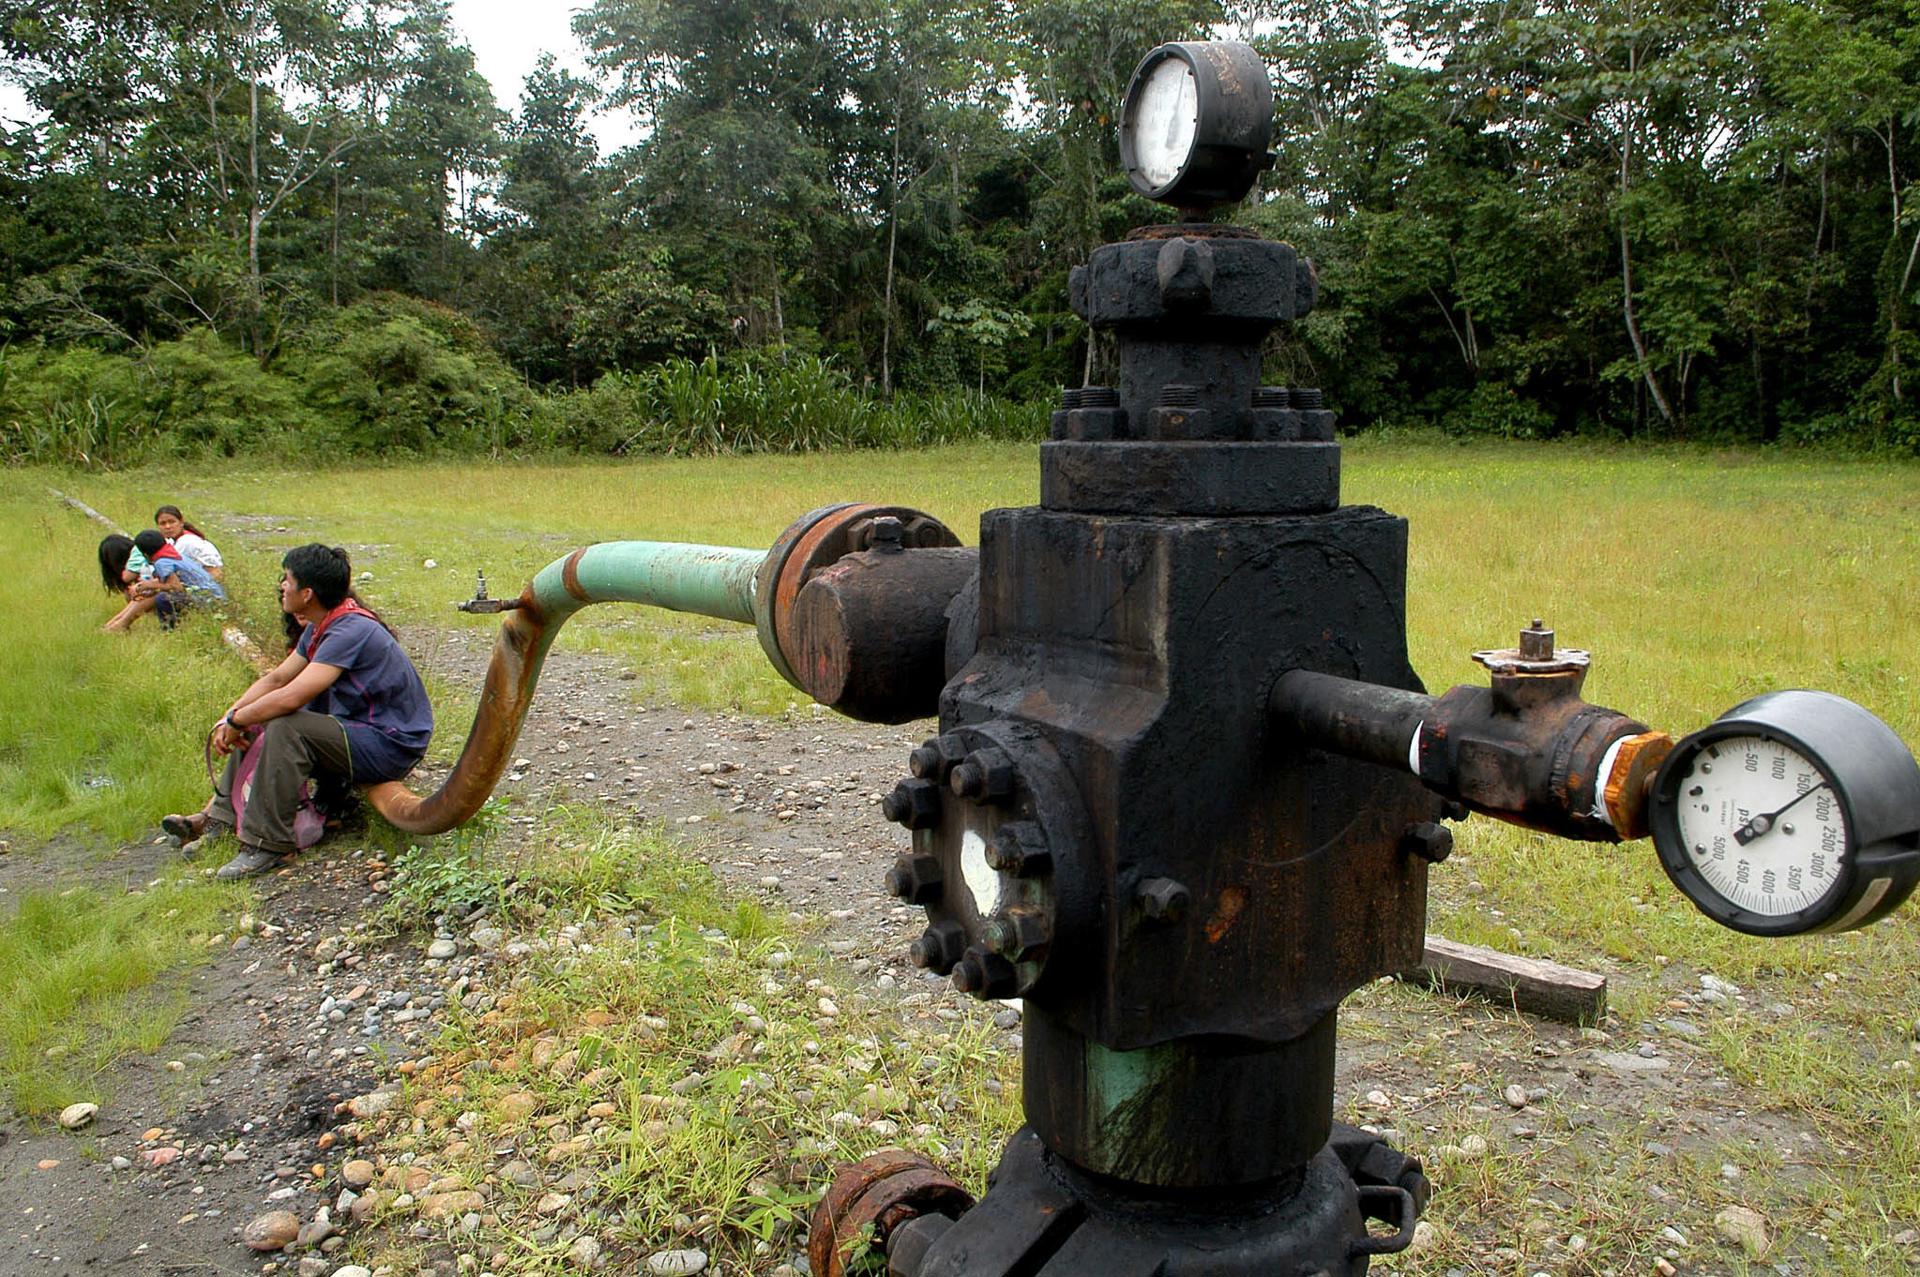 Fue suspendida la licitación para reactivar pozos petroleros en Ecuador